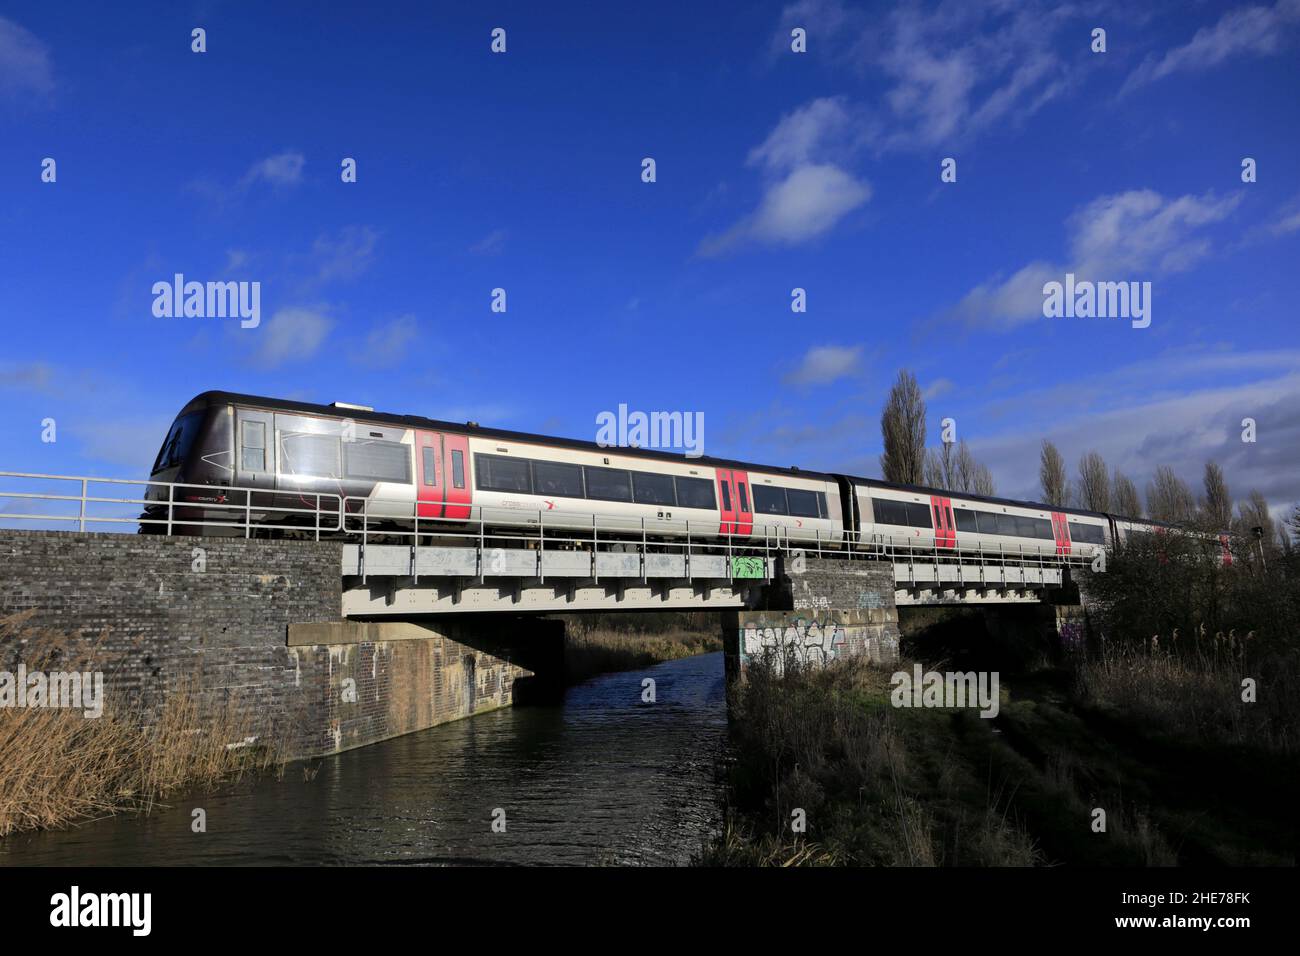 170106 C2C train près de la ville de Whittlesey, Fenland, Cambridgeshire, Angleterre Banque D'Images